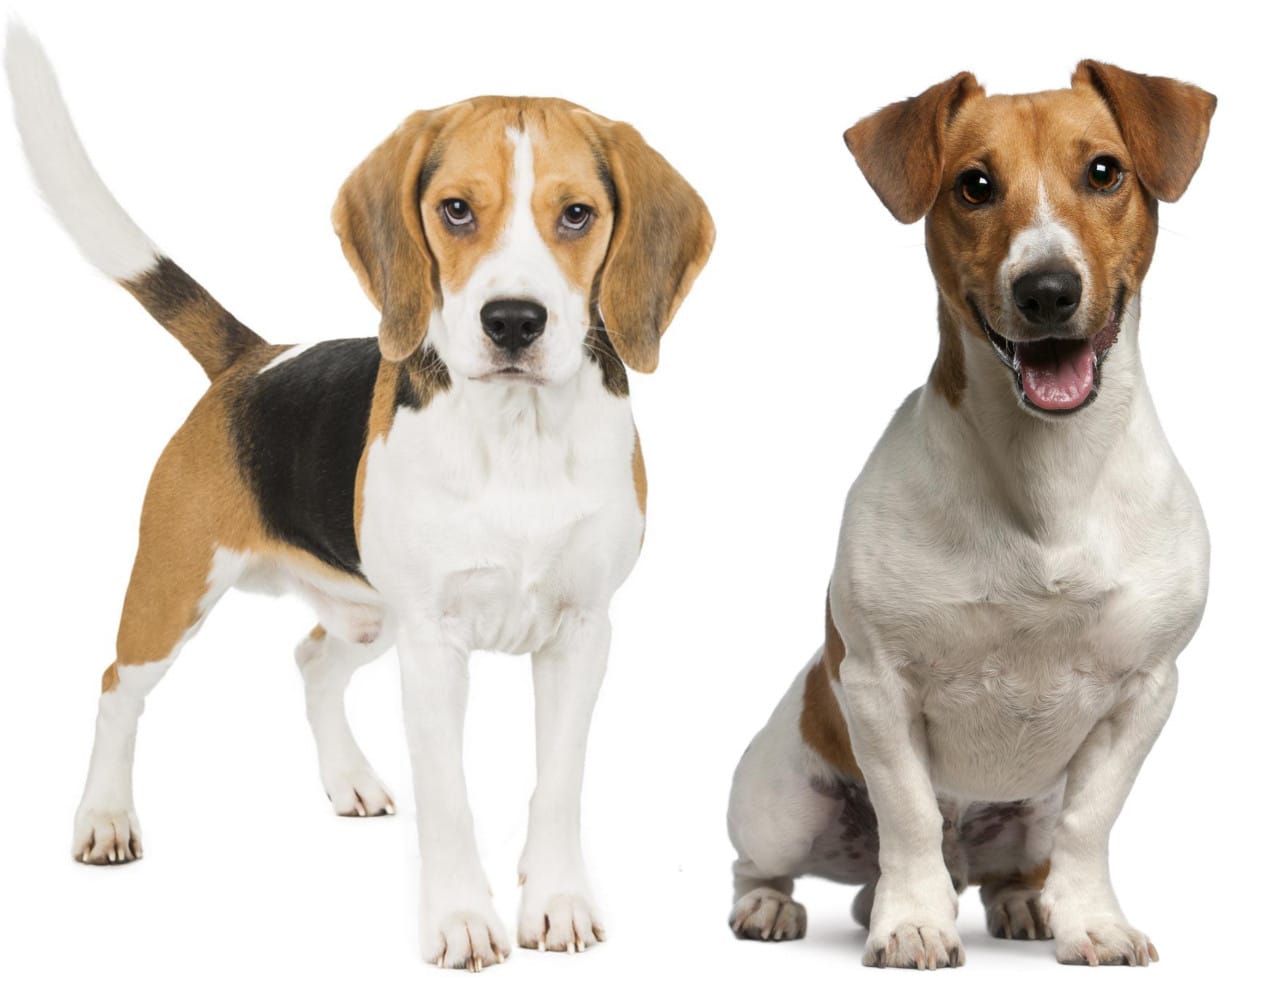 Welcher Hund ist besser für mich geeignet? Soll ich einen Beagle oder Jack Russell kaufen?